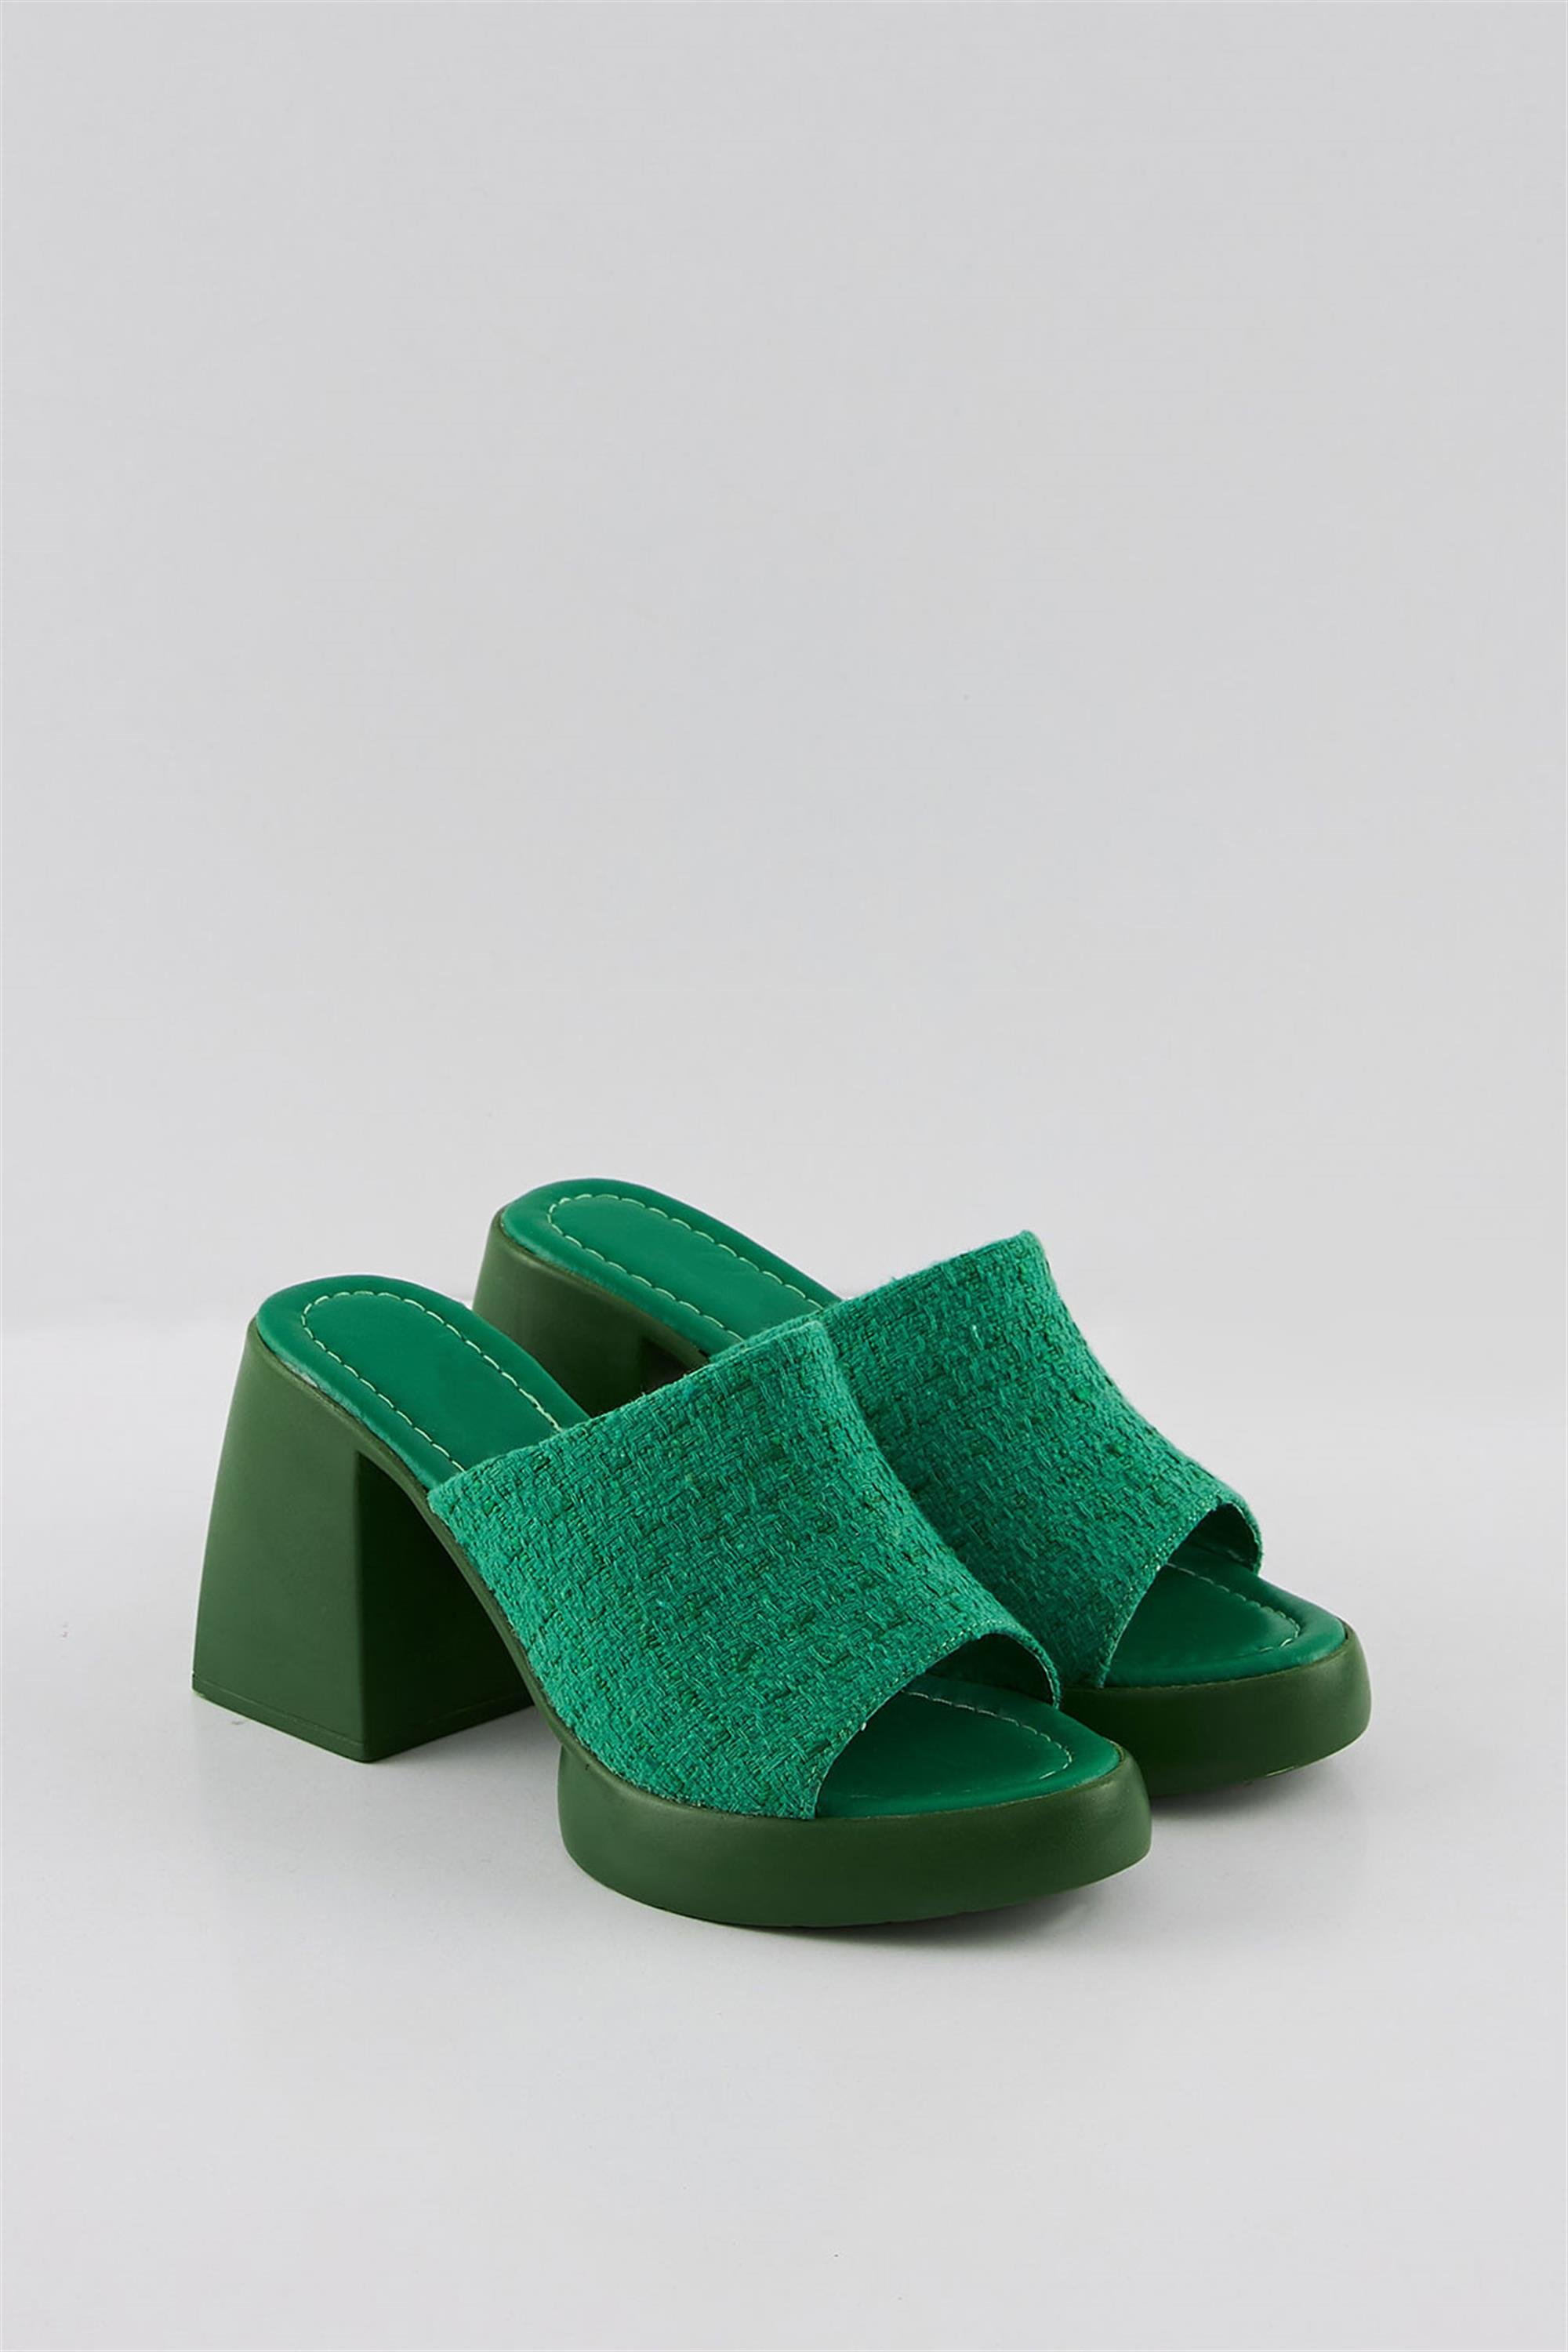 Şator Yeşil Burnu Açık Yazlık Rahat Topuklu Kadın Sandalet Terlik